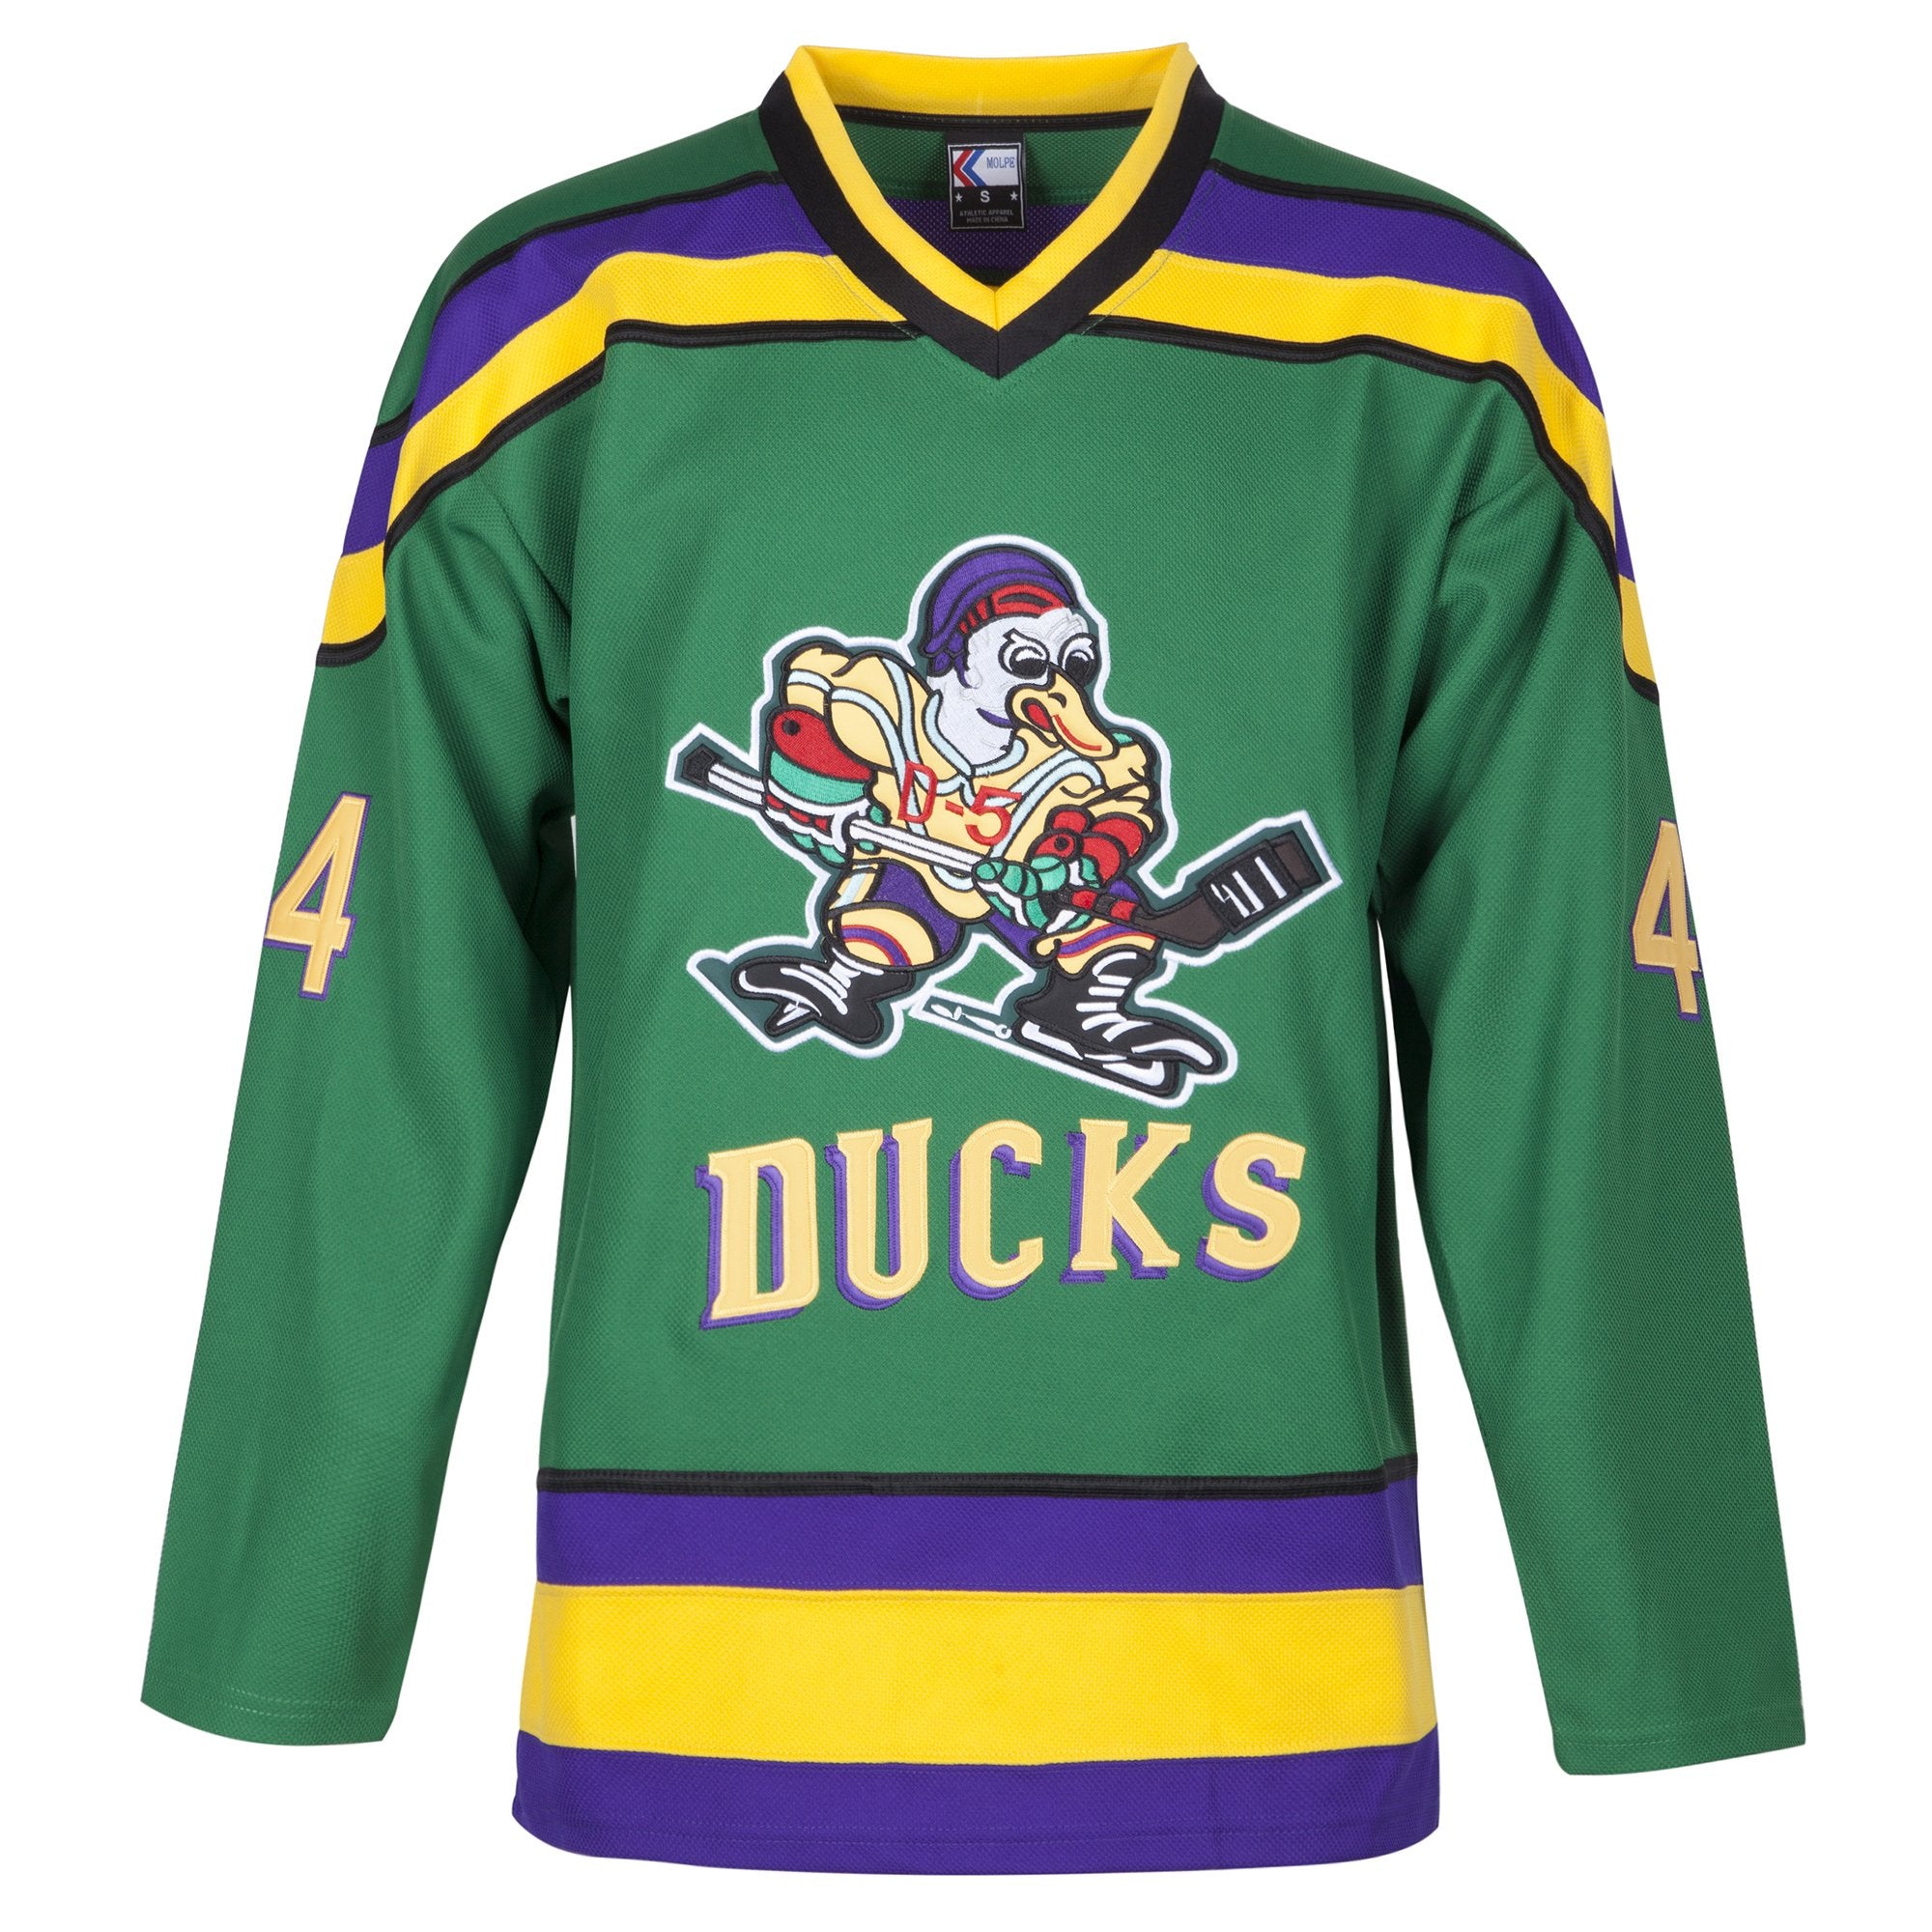 Fulton Reed Mighty Ducks 44 Ice Hockey Jersey, Small / Green